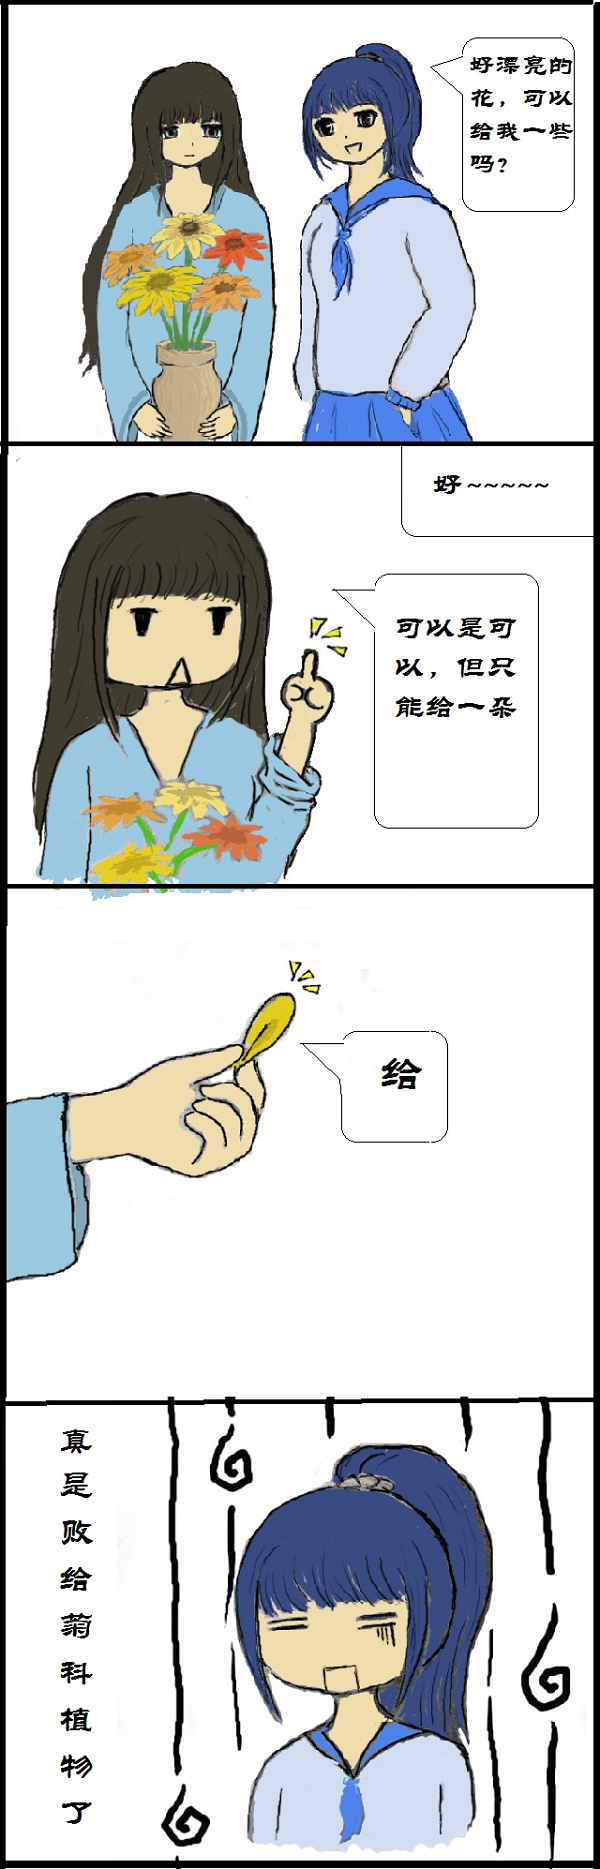 有奖征文008号:科学漫画